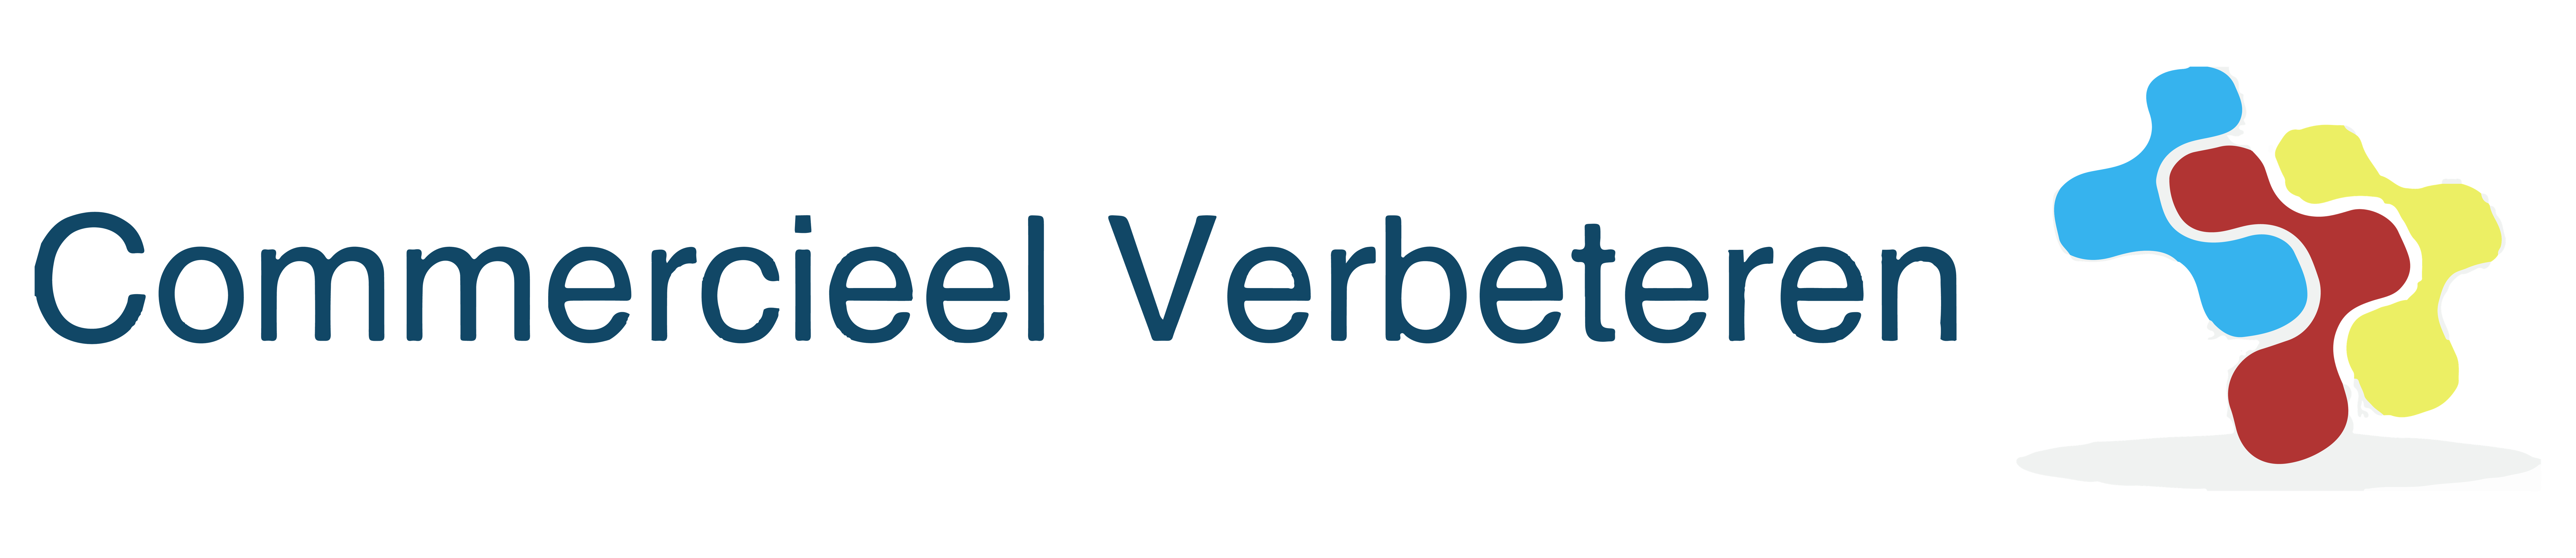 logo__CommercieelVerbetern-1